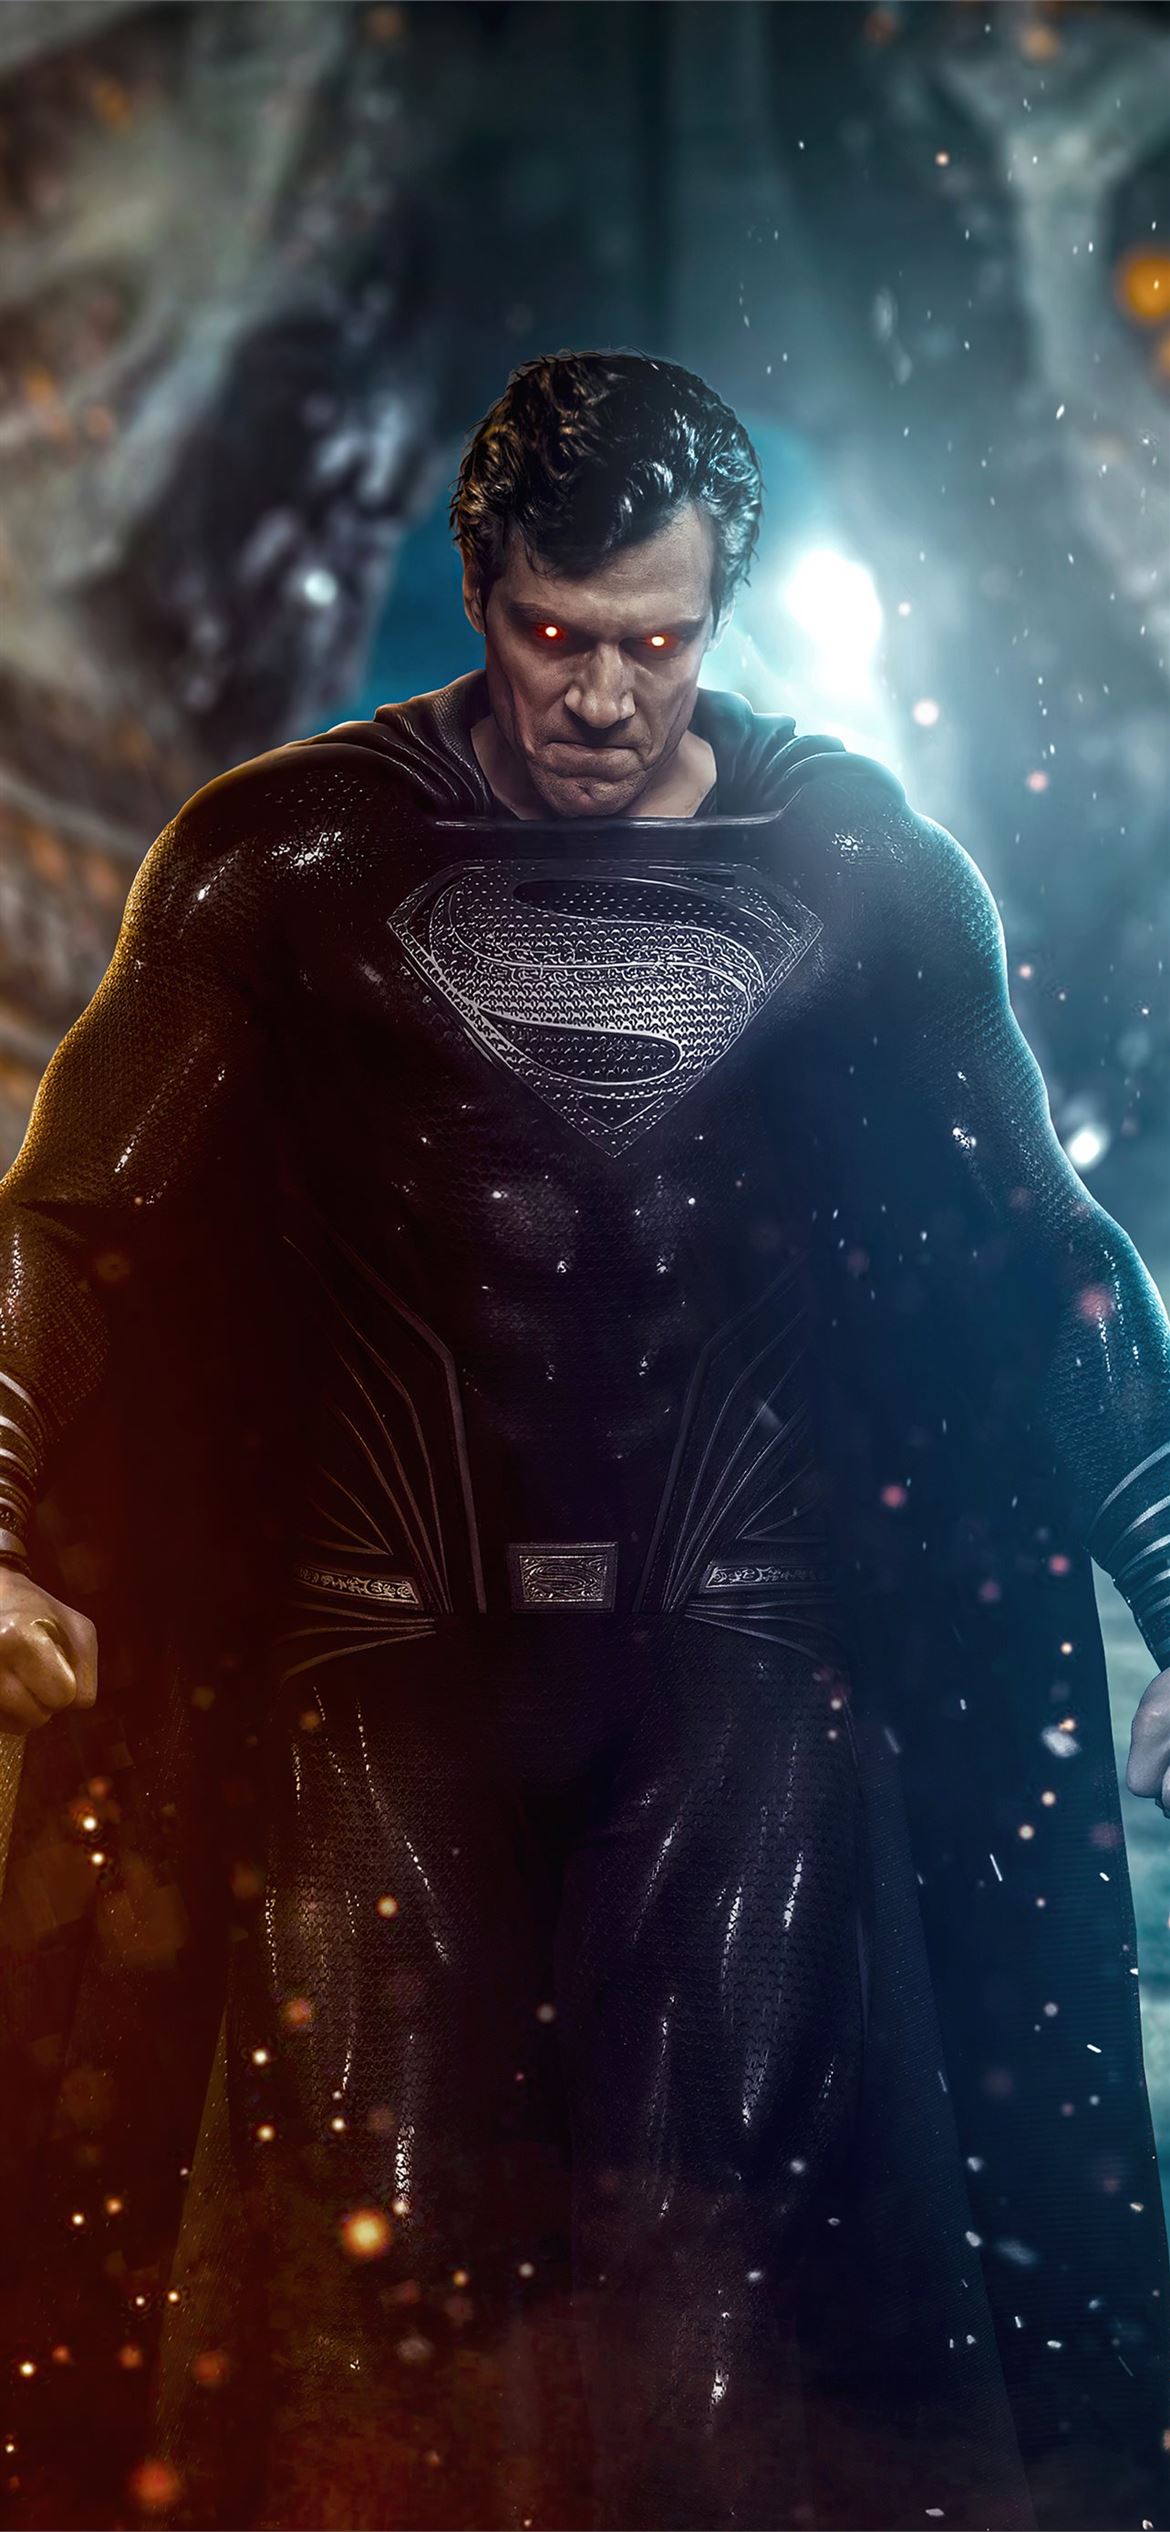 Justice League Superman Black Suit 4k iPhone Wallpaper